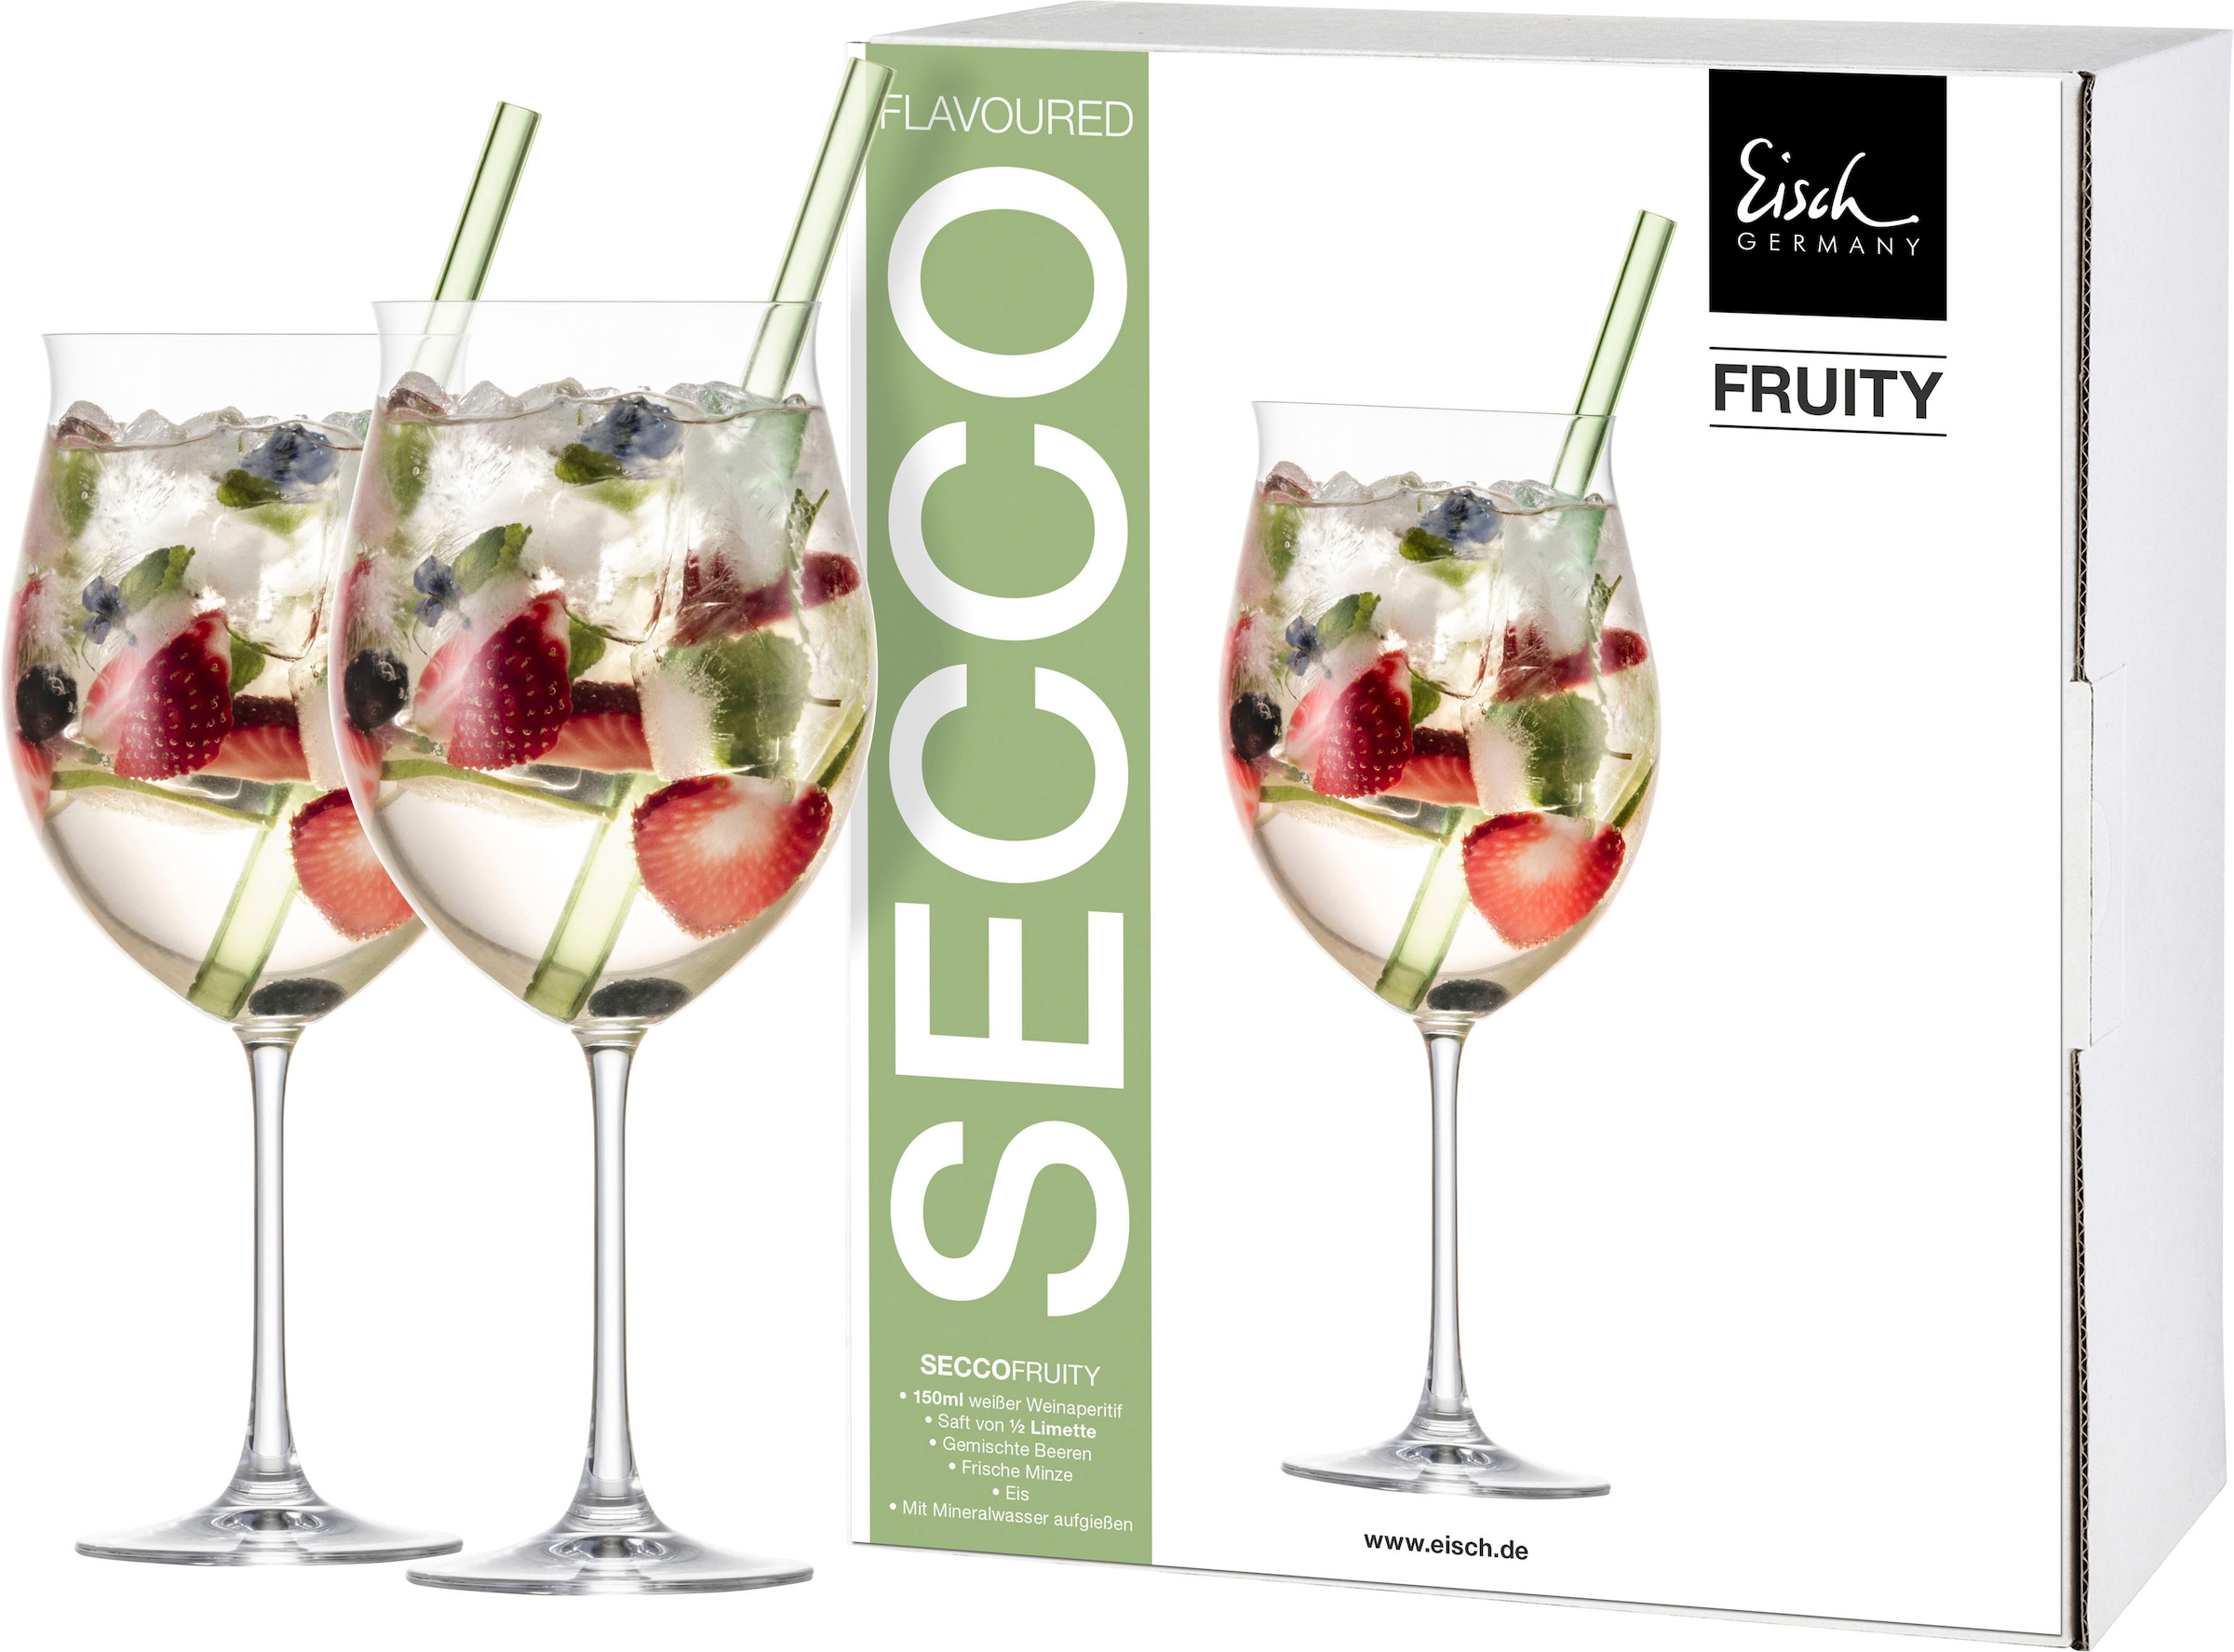 Eisch Cocktailglas "SECCO FLAVOURED", (Set, 2 tlg., 2 Gläser im Geschenkkarton), Fruity, mit grünem Glashalm, 2-teilig